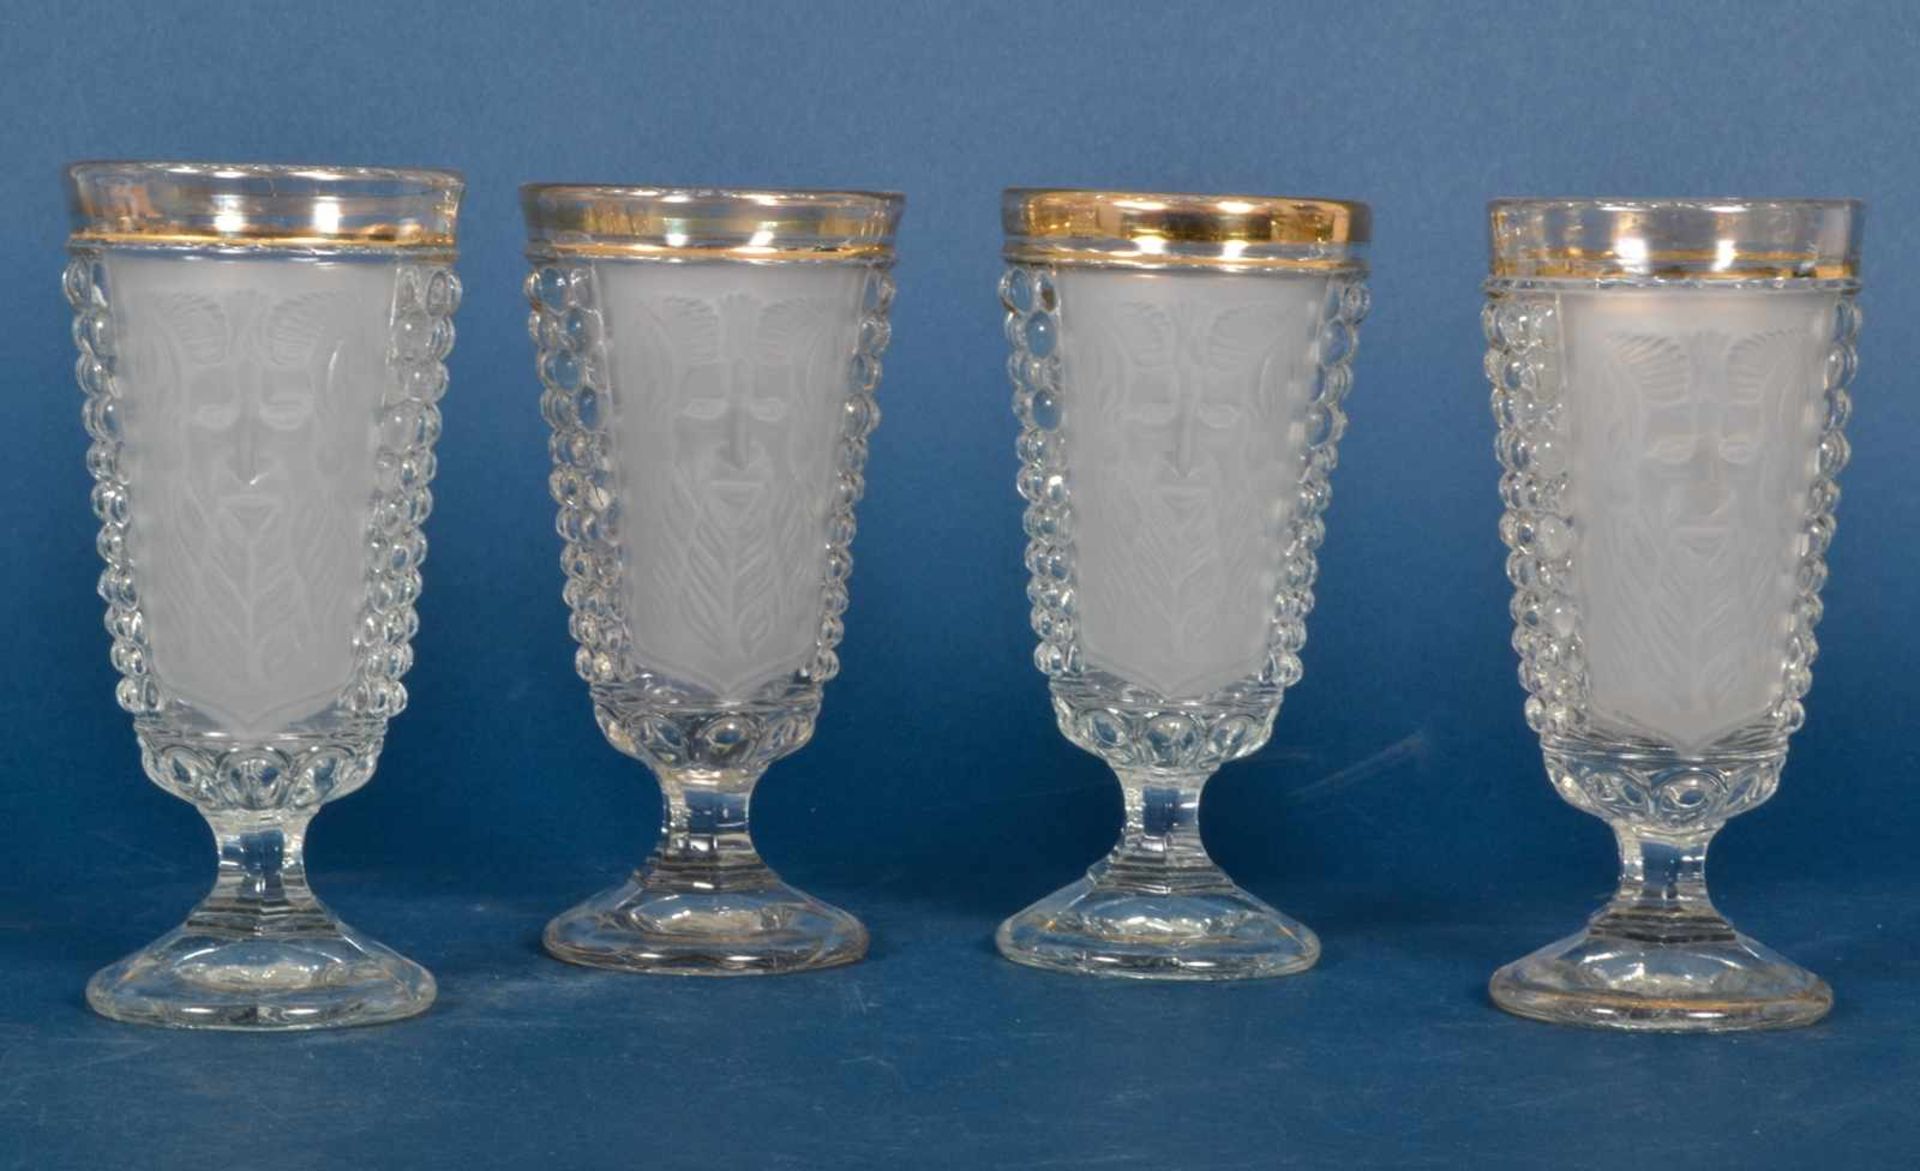 Folge von 4 Dionysos - Weingläsern, Pressglas um 1900, Höhe je ca. 17 cm. Goldränder etwas berieben,